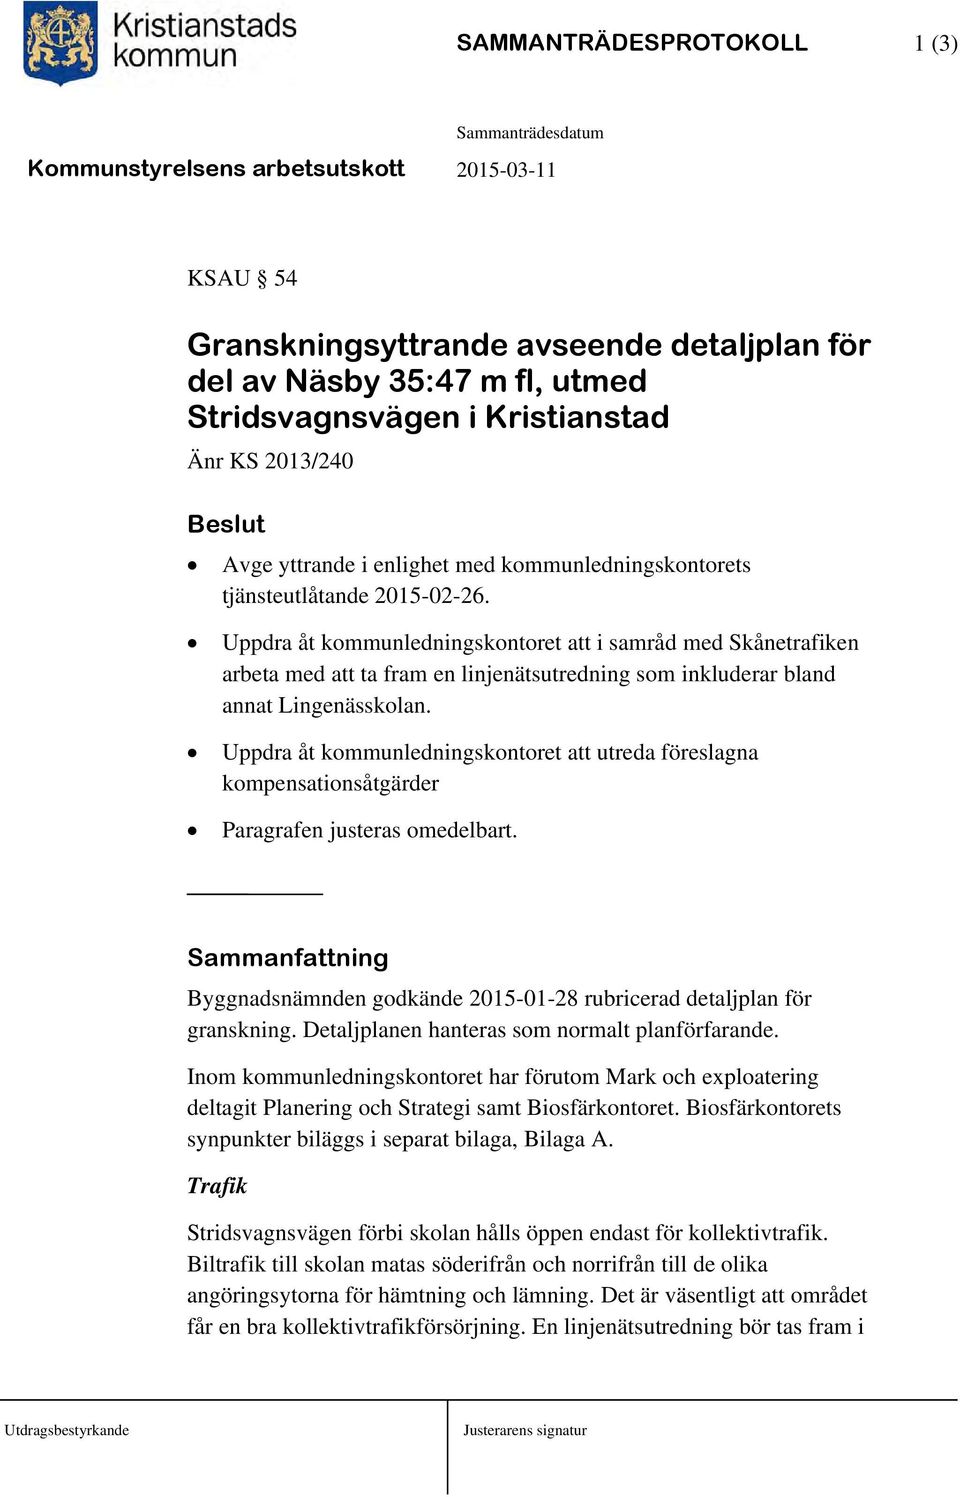 Uppdra åt kommunledningskontoret att i samråd med Skånetrafiken arbeta med att ta fram en linjenätsutredning som inkluderar bland annat Lingenässkolan.